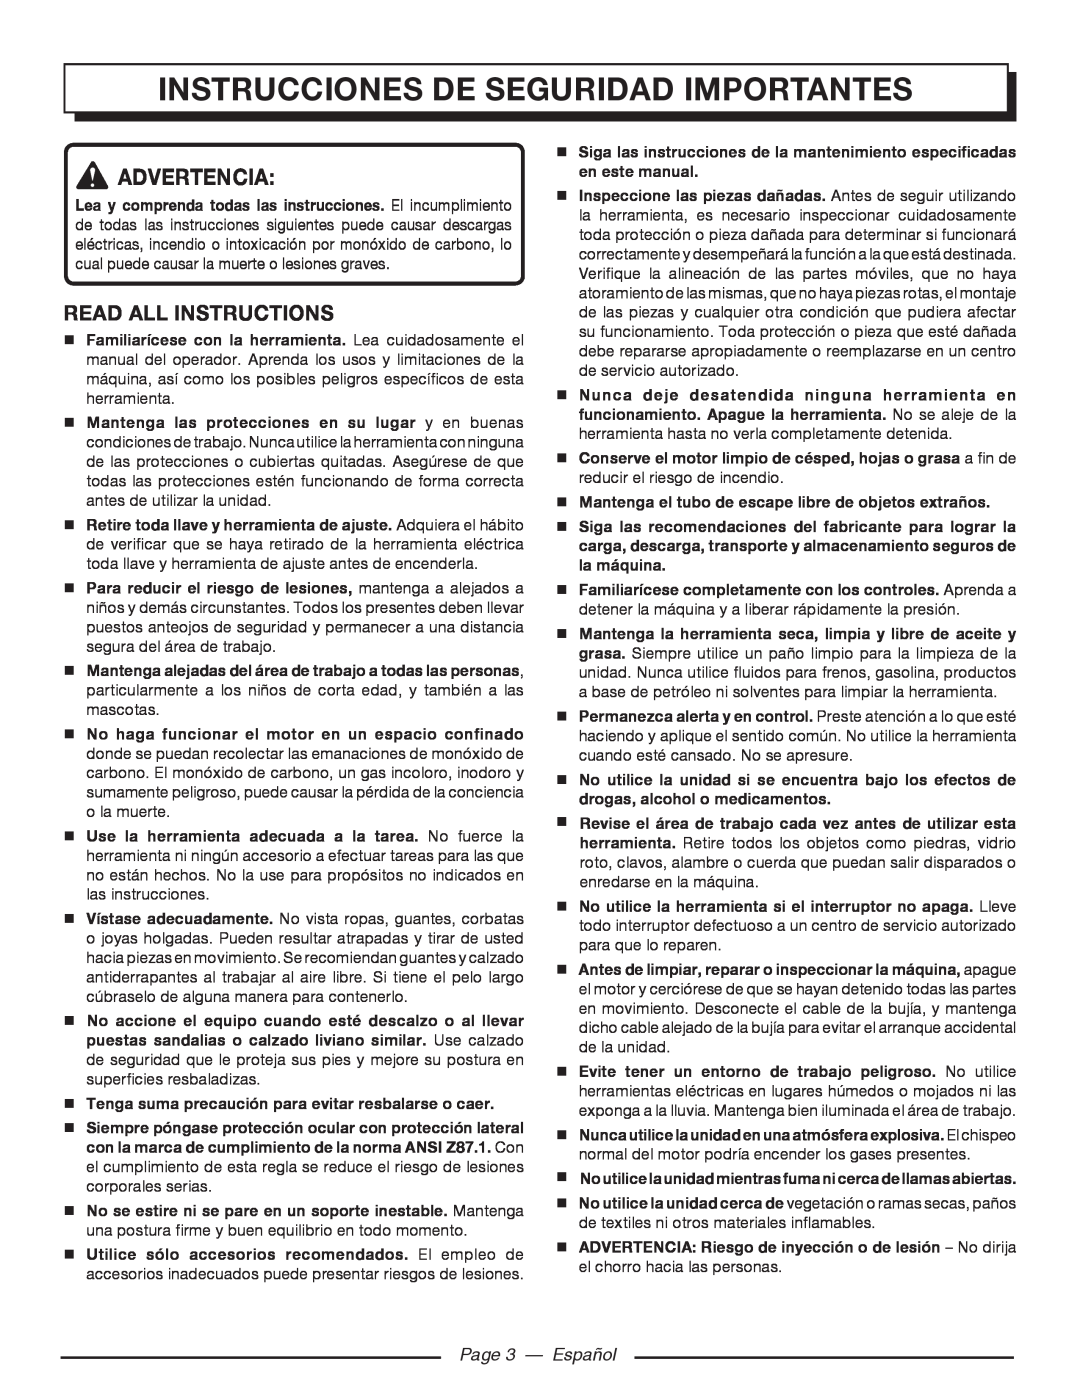 Homelite UT80516 instrucciones de seguridad importantes, Page 3 - Español, Advertencia, Read All Instructions 